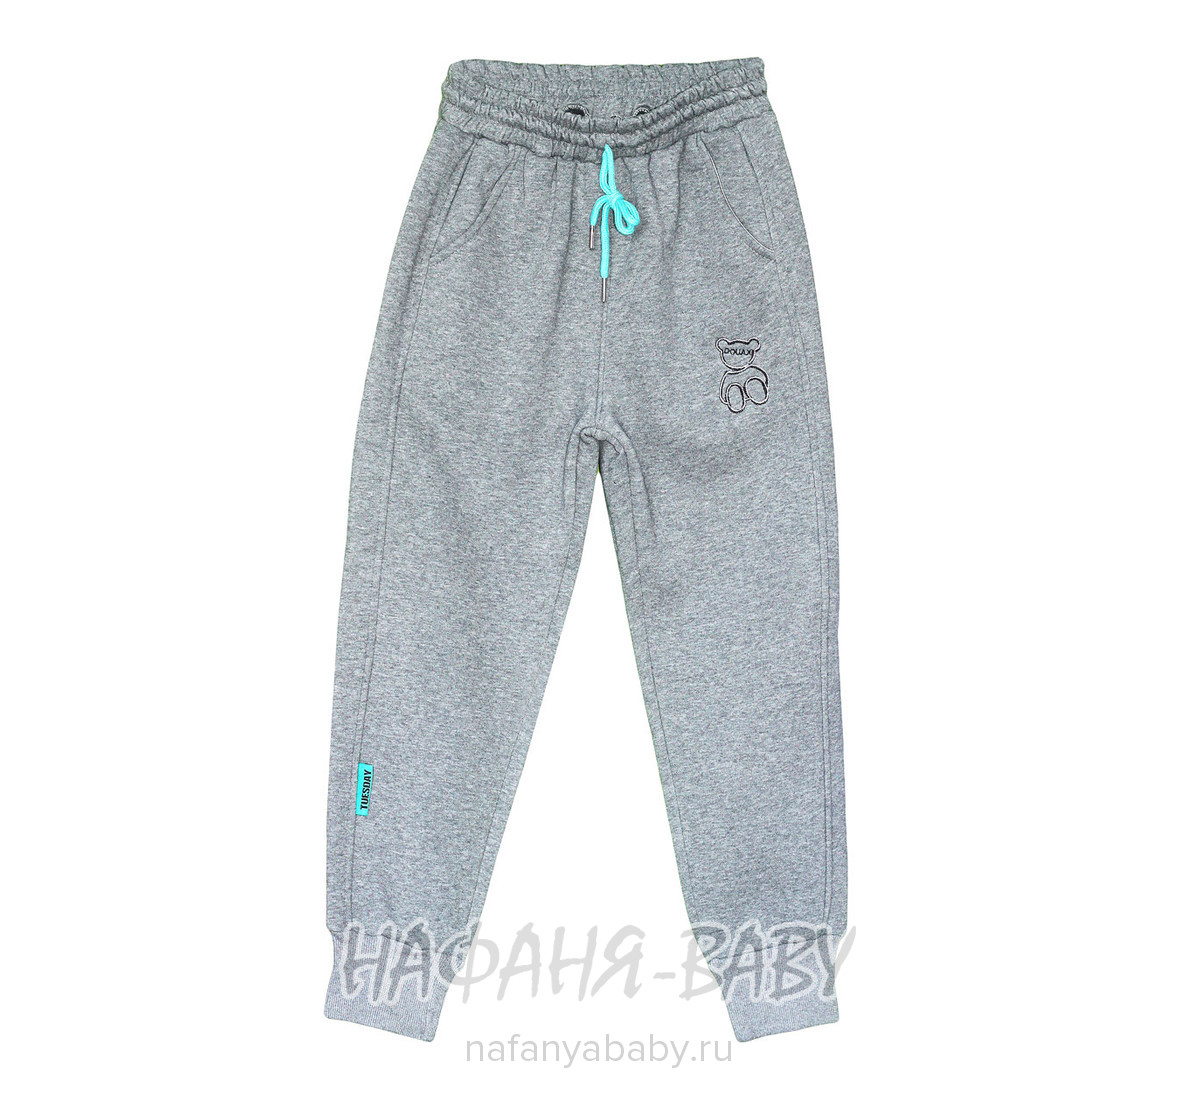 Зимние брюки на флисе XING арт: 606, 10-15 лет, цвет серый меланж, оптом Китай (Пекин)